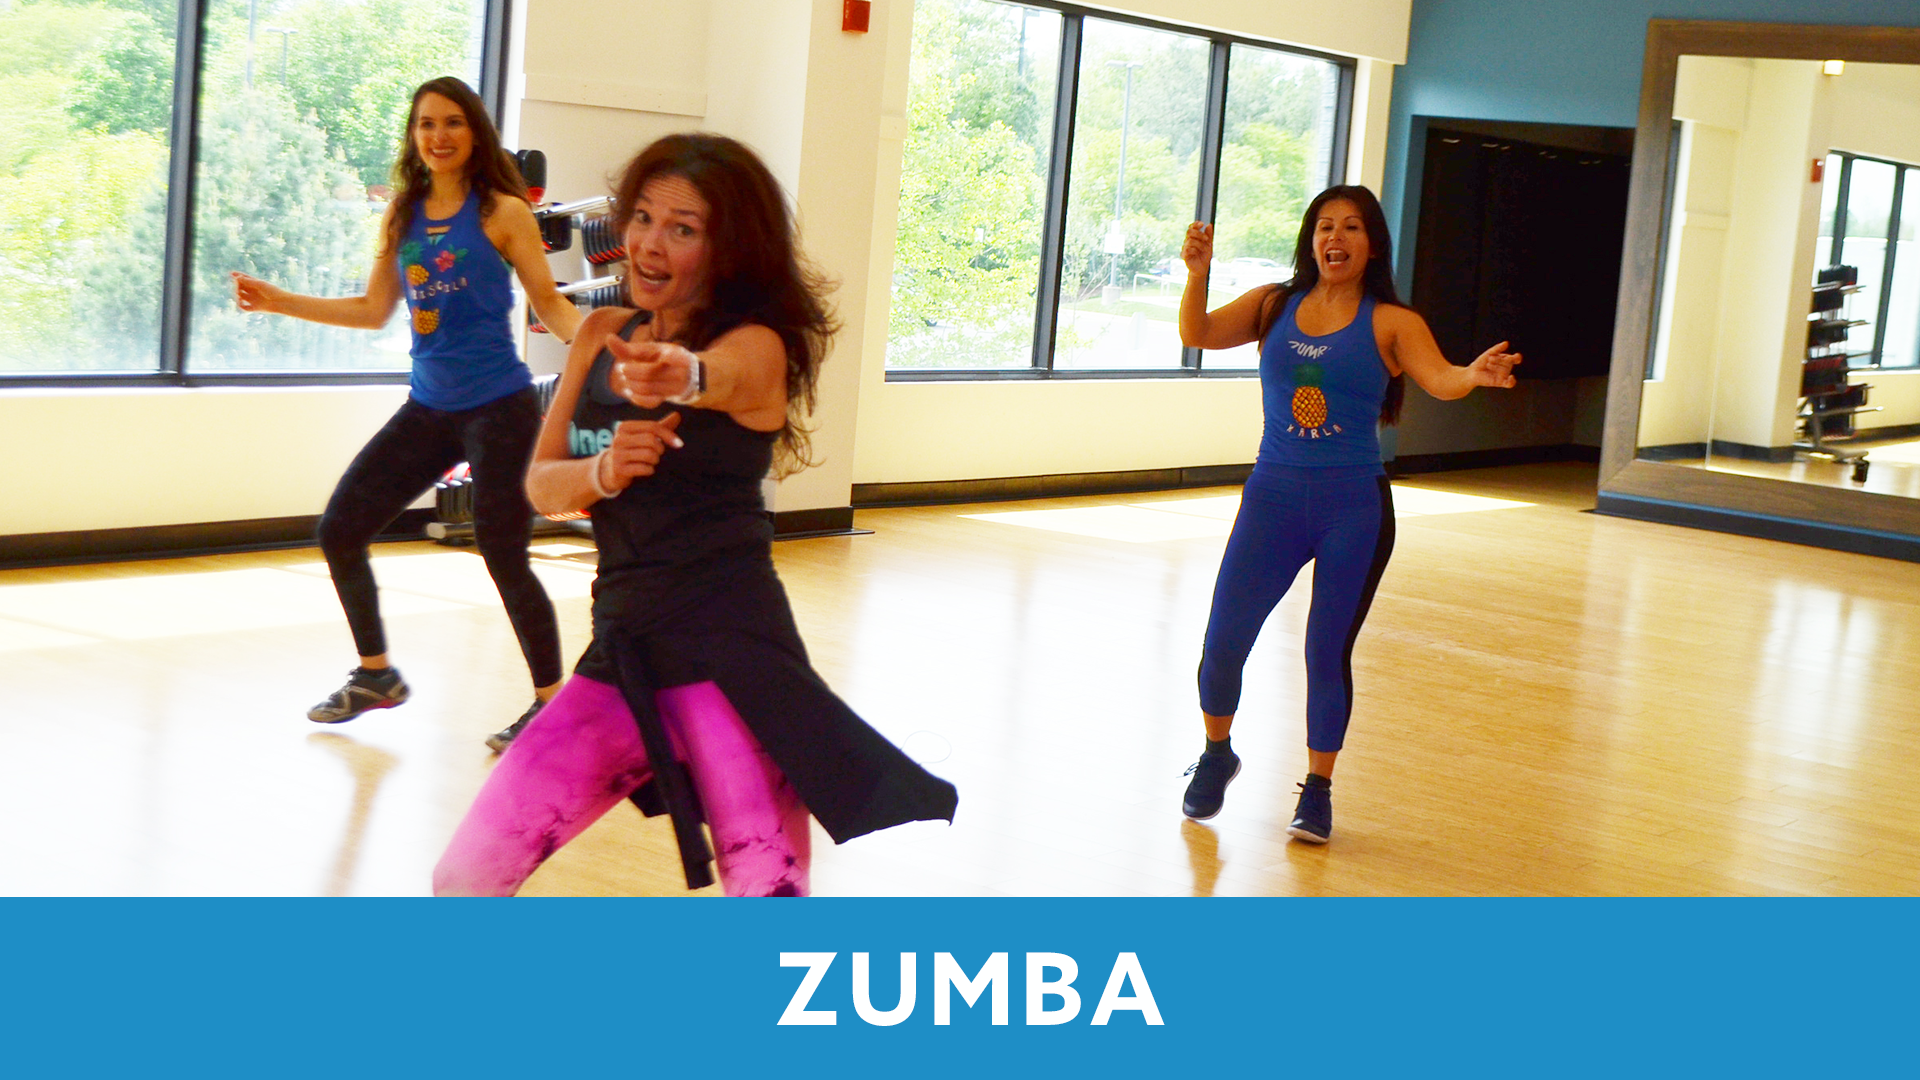 zumba dance workouts